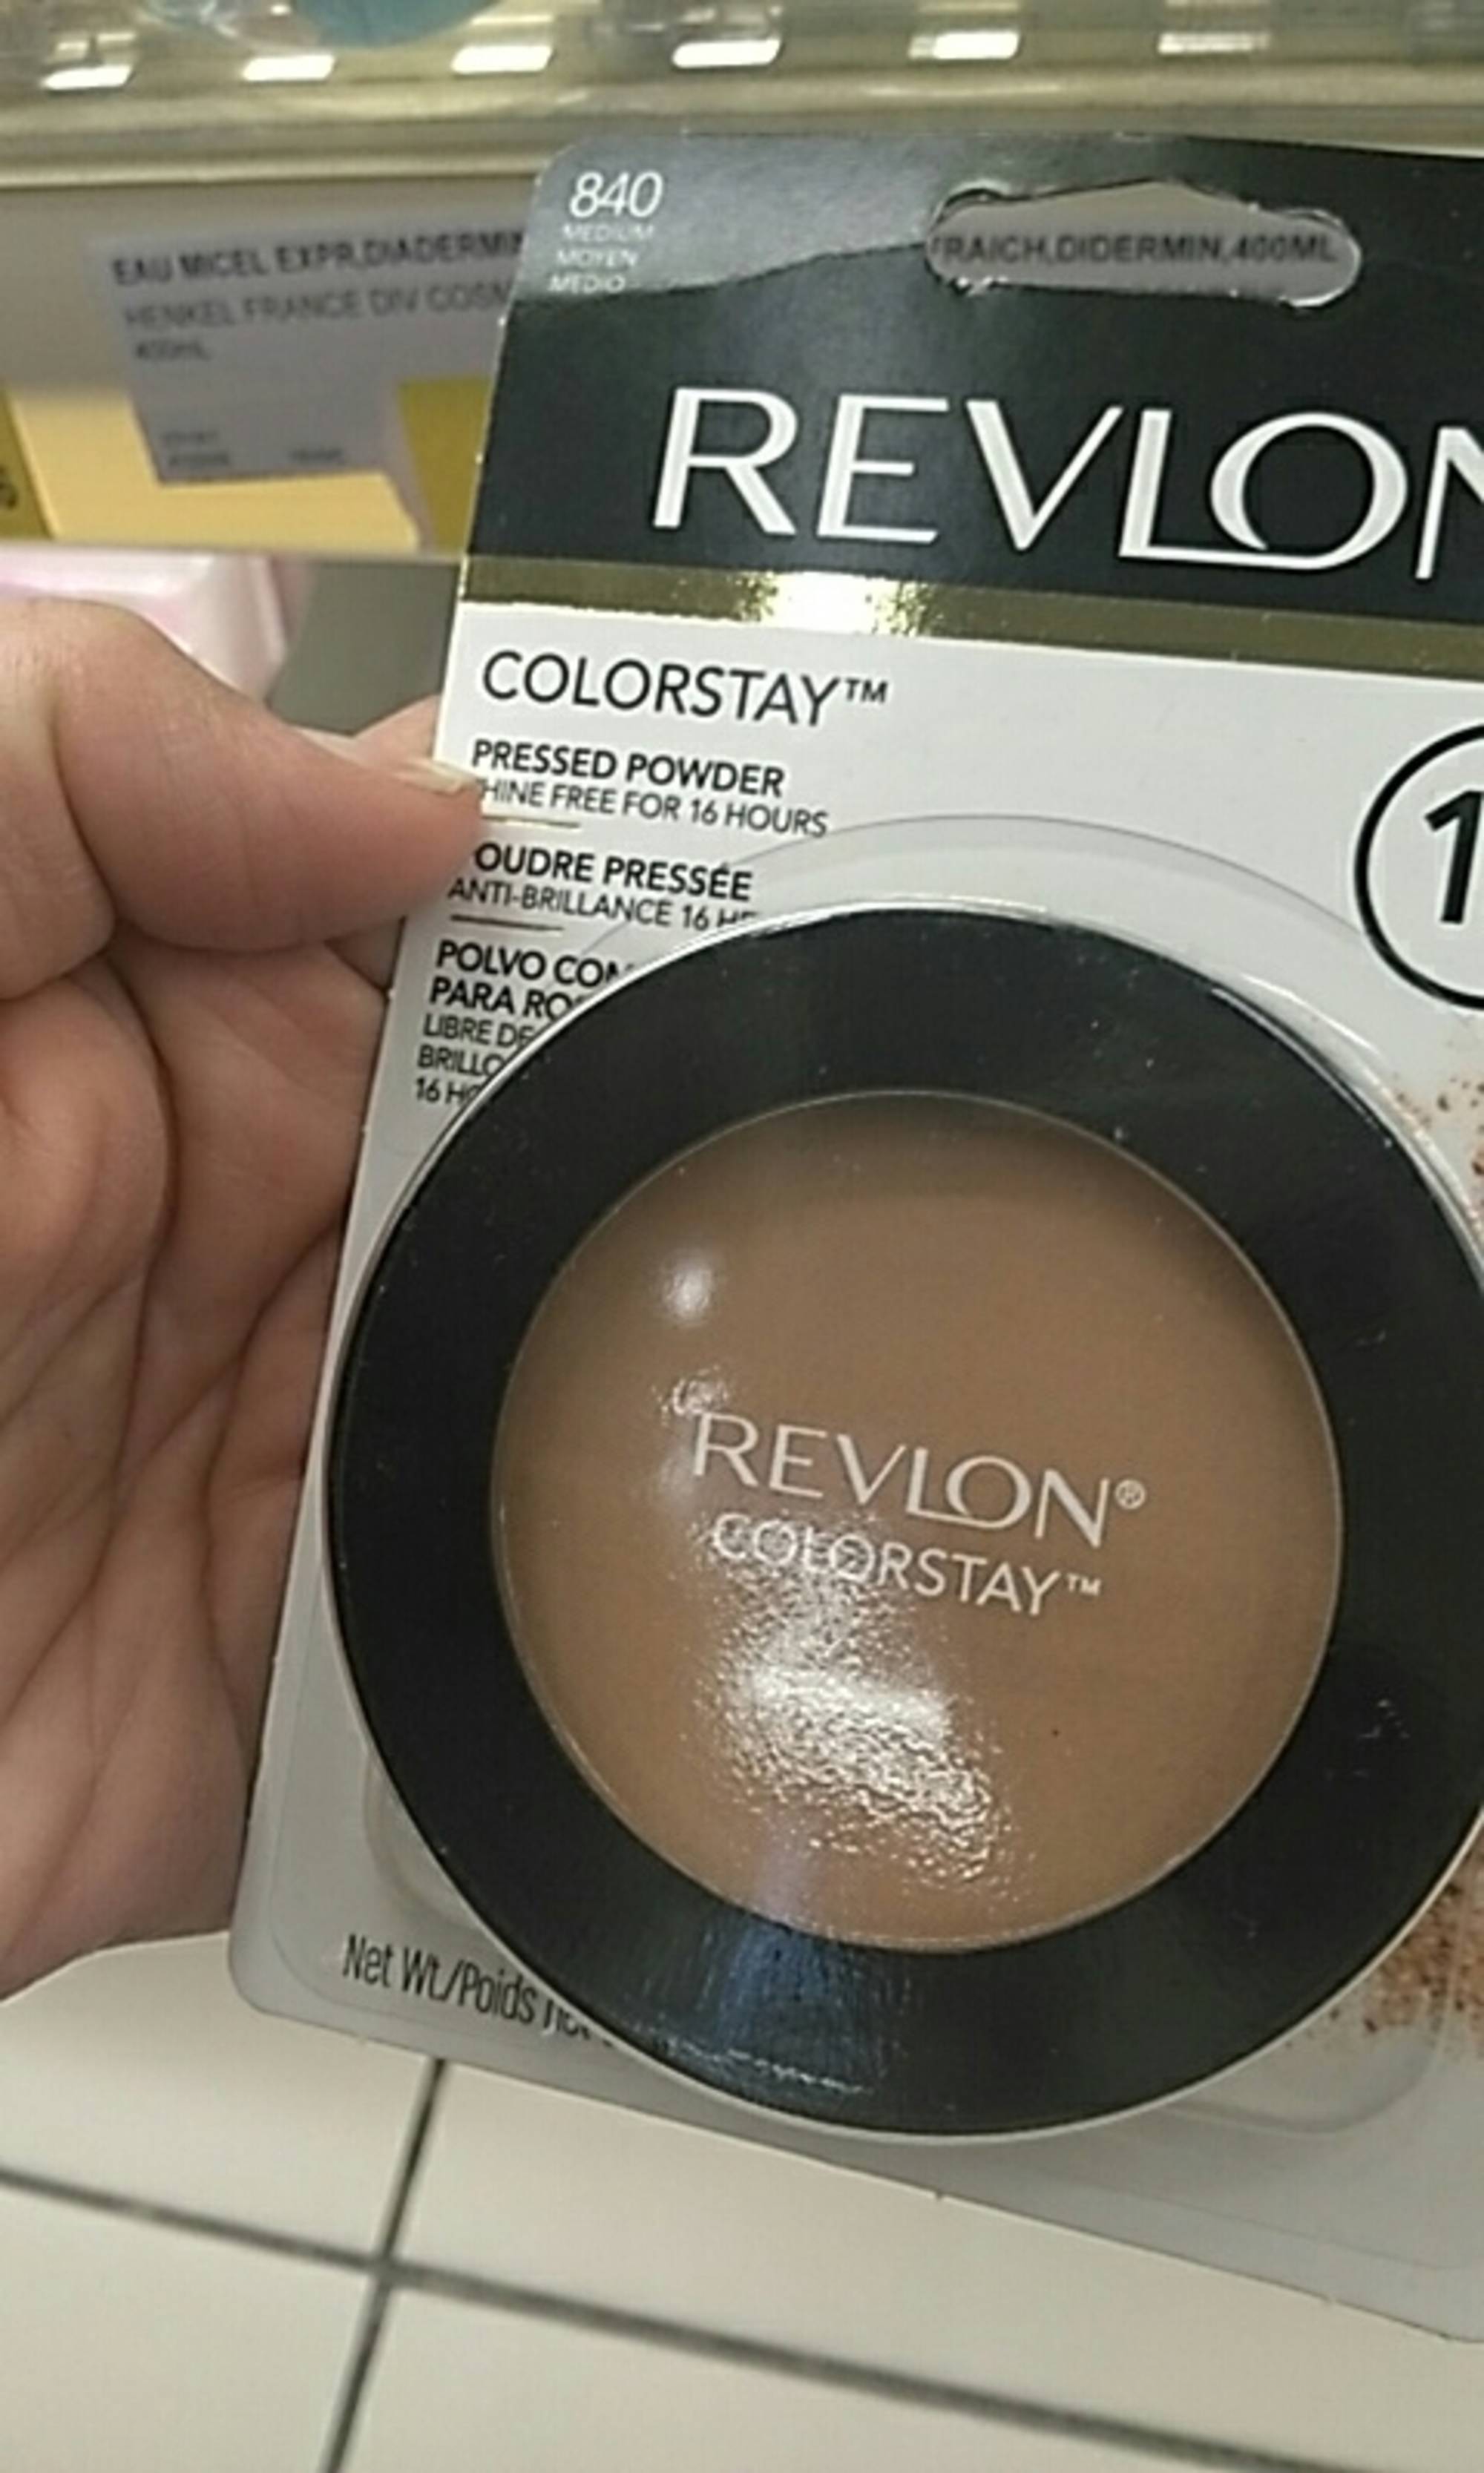 REVLON - Colorstay - Poudre pressée - 840 medium